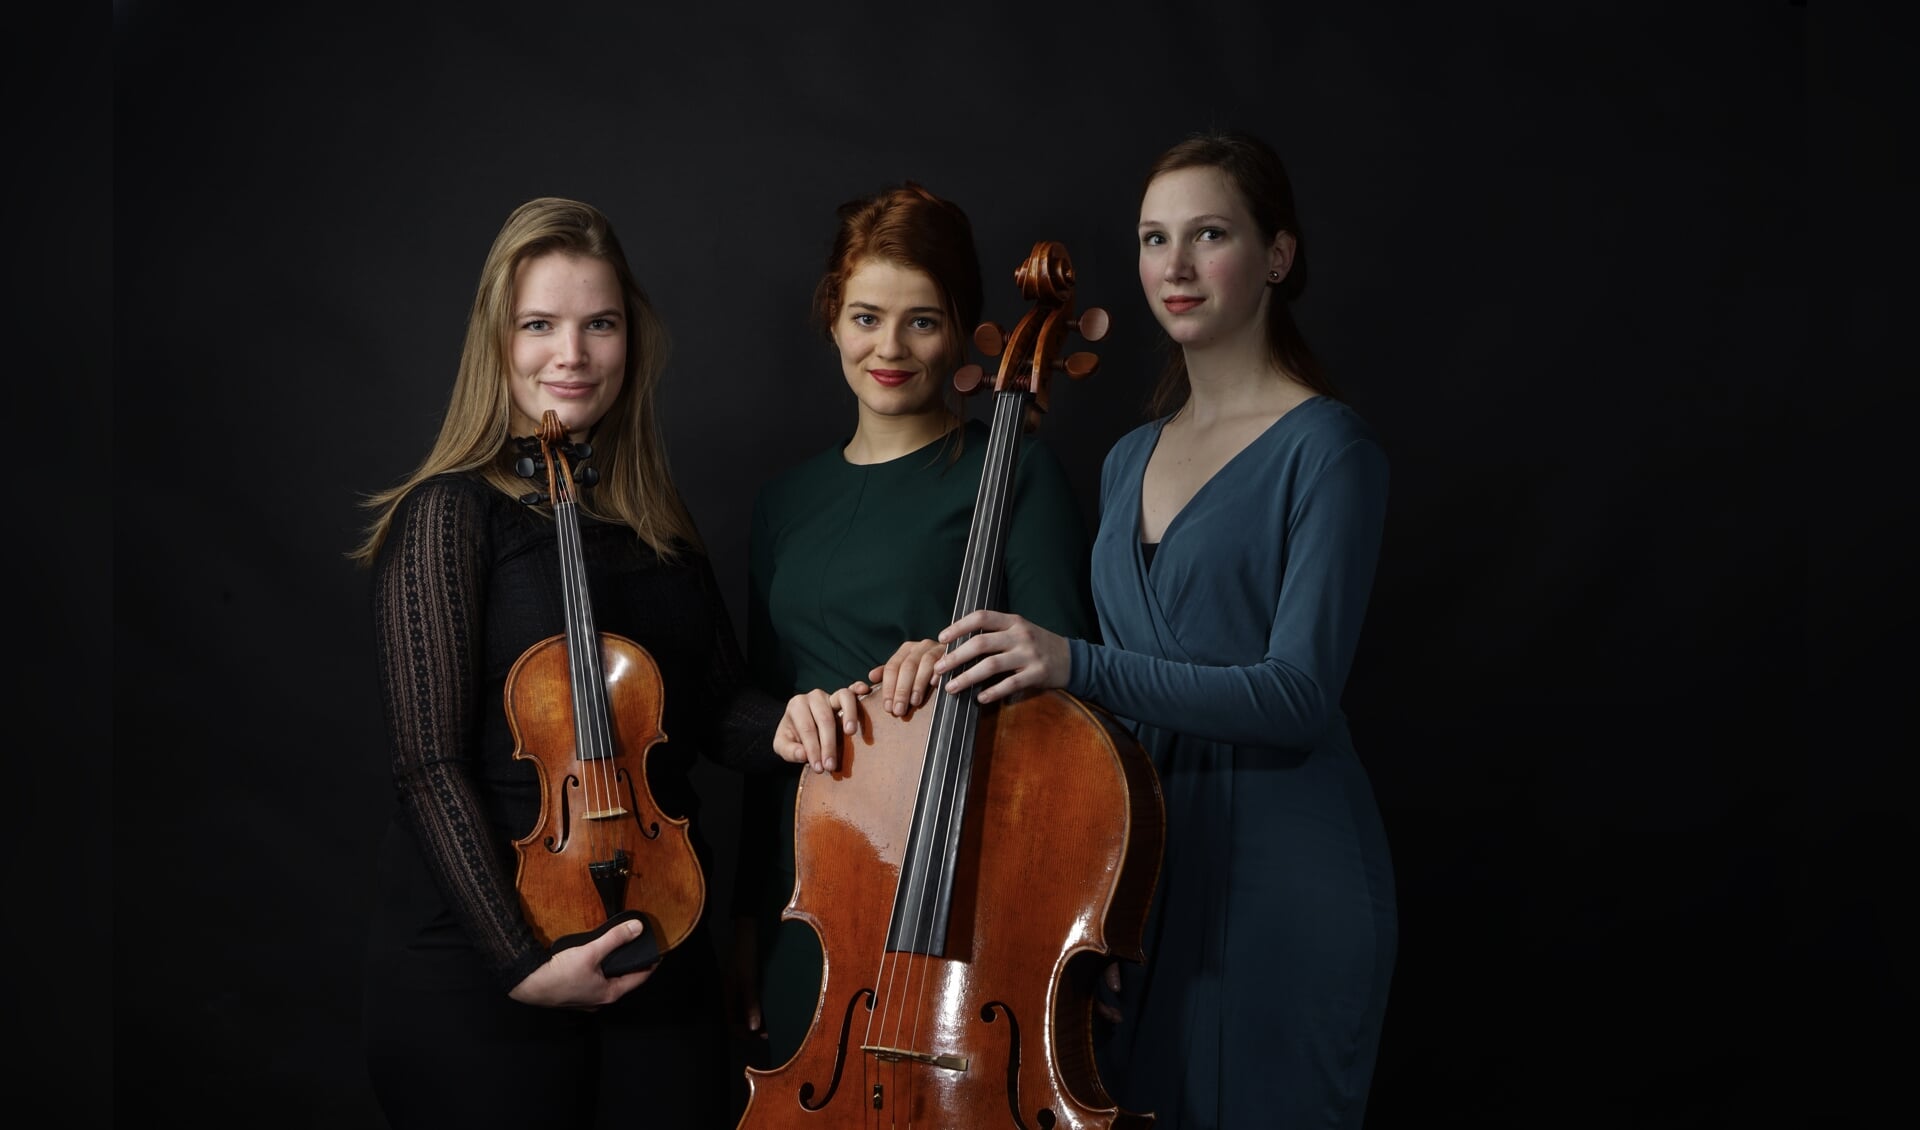 De leden van het Volkmann Trio: Coraline Groen (viool), Valentina Toth 
(piano) en Jobine Siekman (cello).